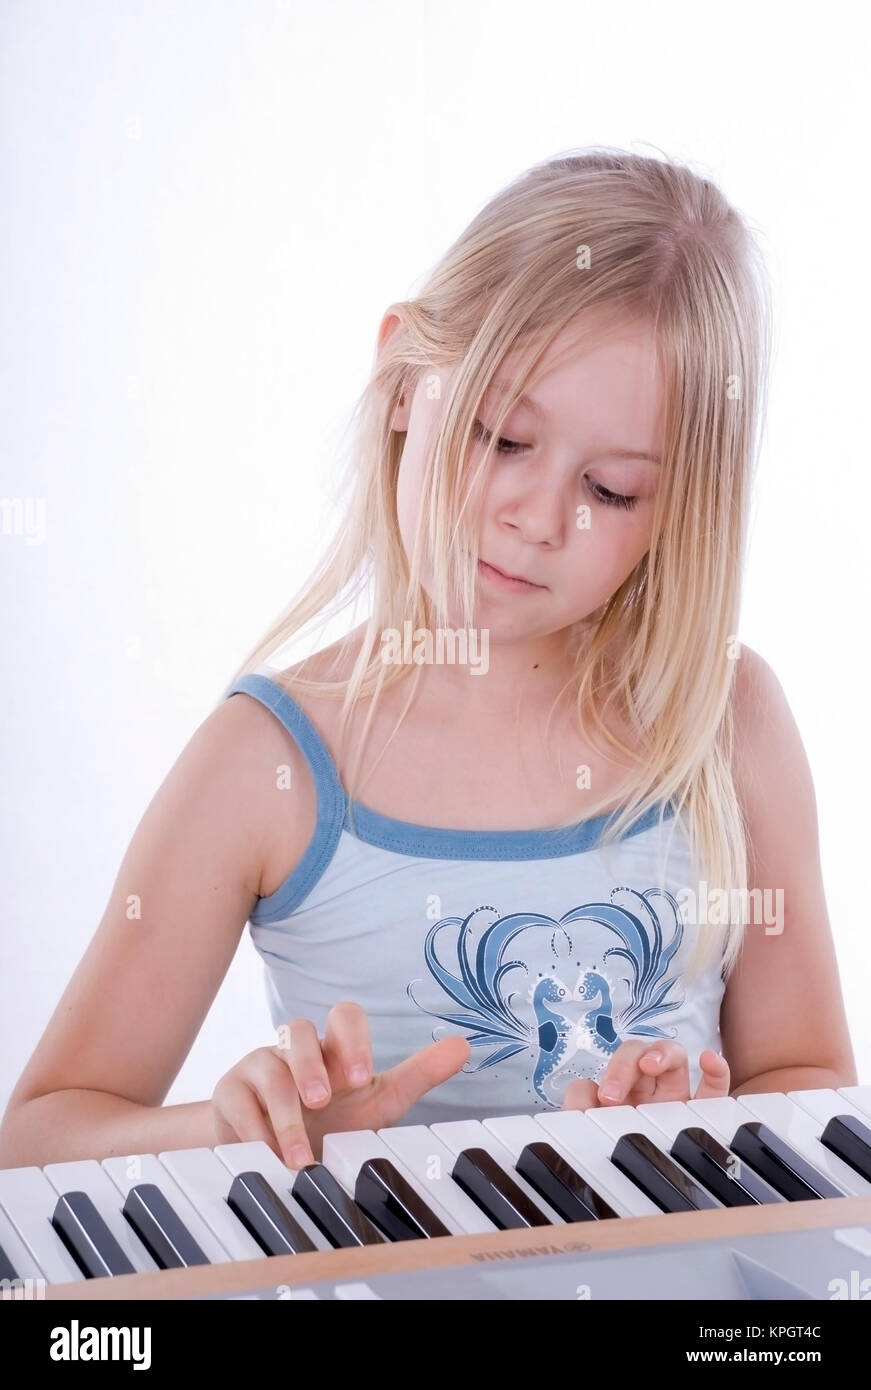 Model released , M?dchen, 7, spielt Keyboard - girl plays keyboard Stock Photo